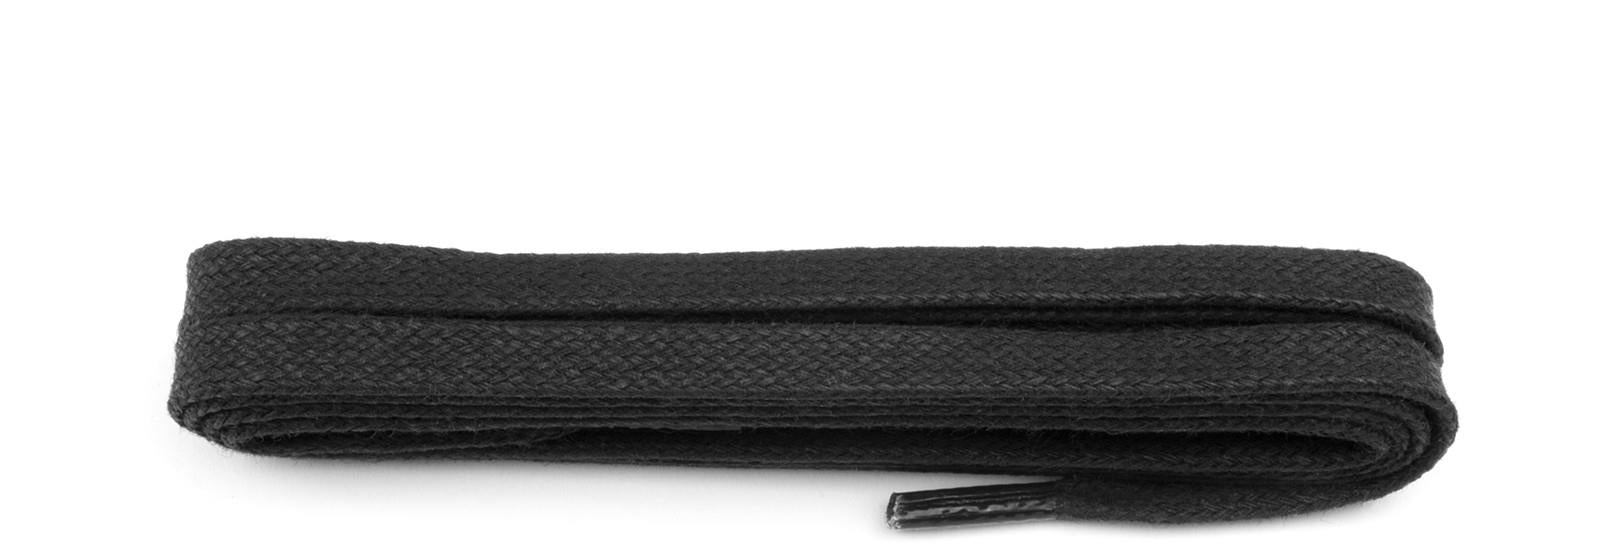 Shoestring Flat 5mm Waxed Badminton Shoe Laces - Black 140cm